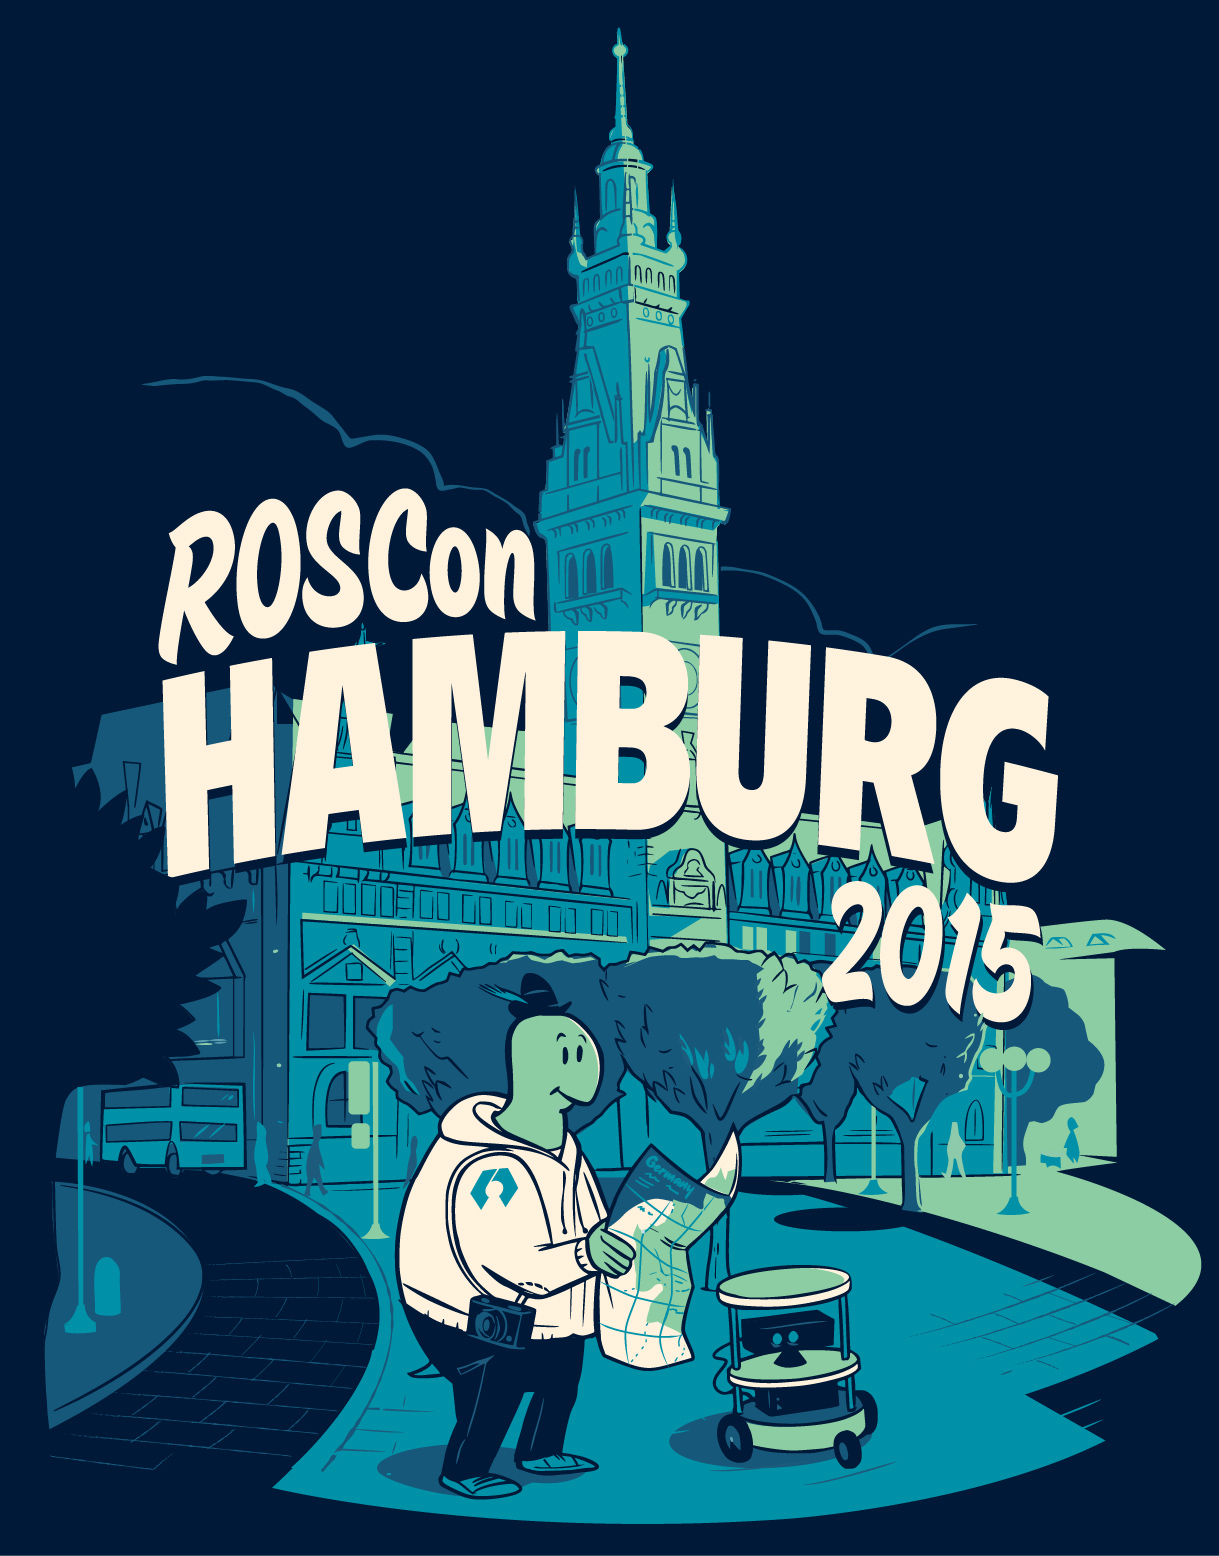 ROSCon 2015